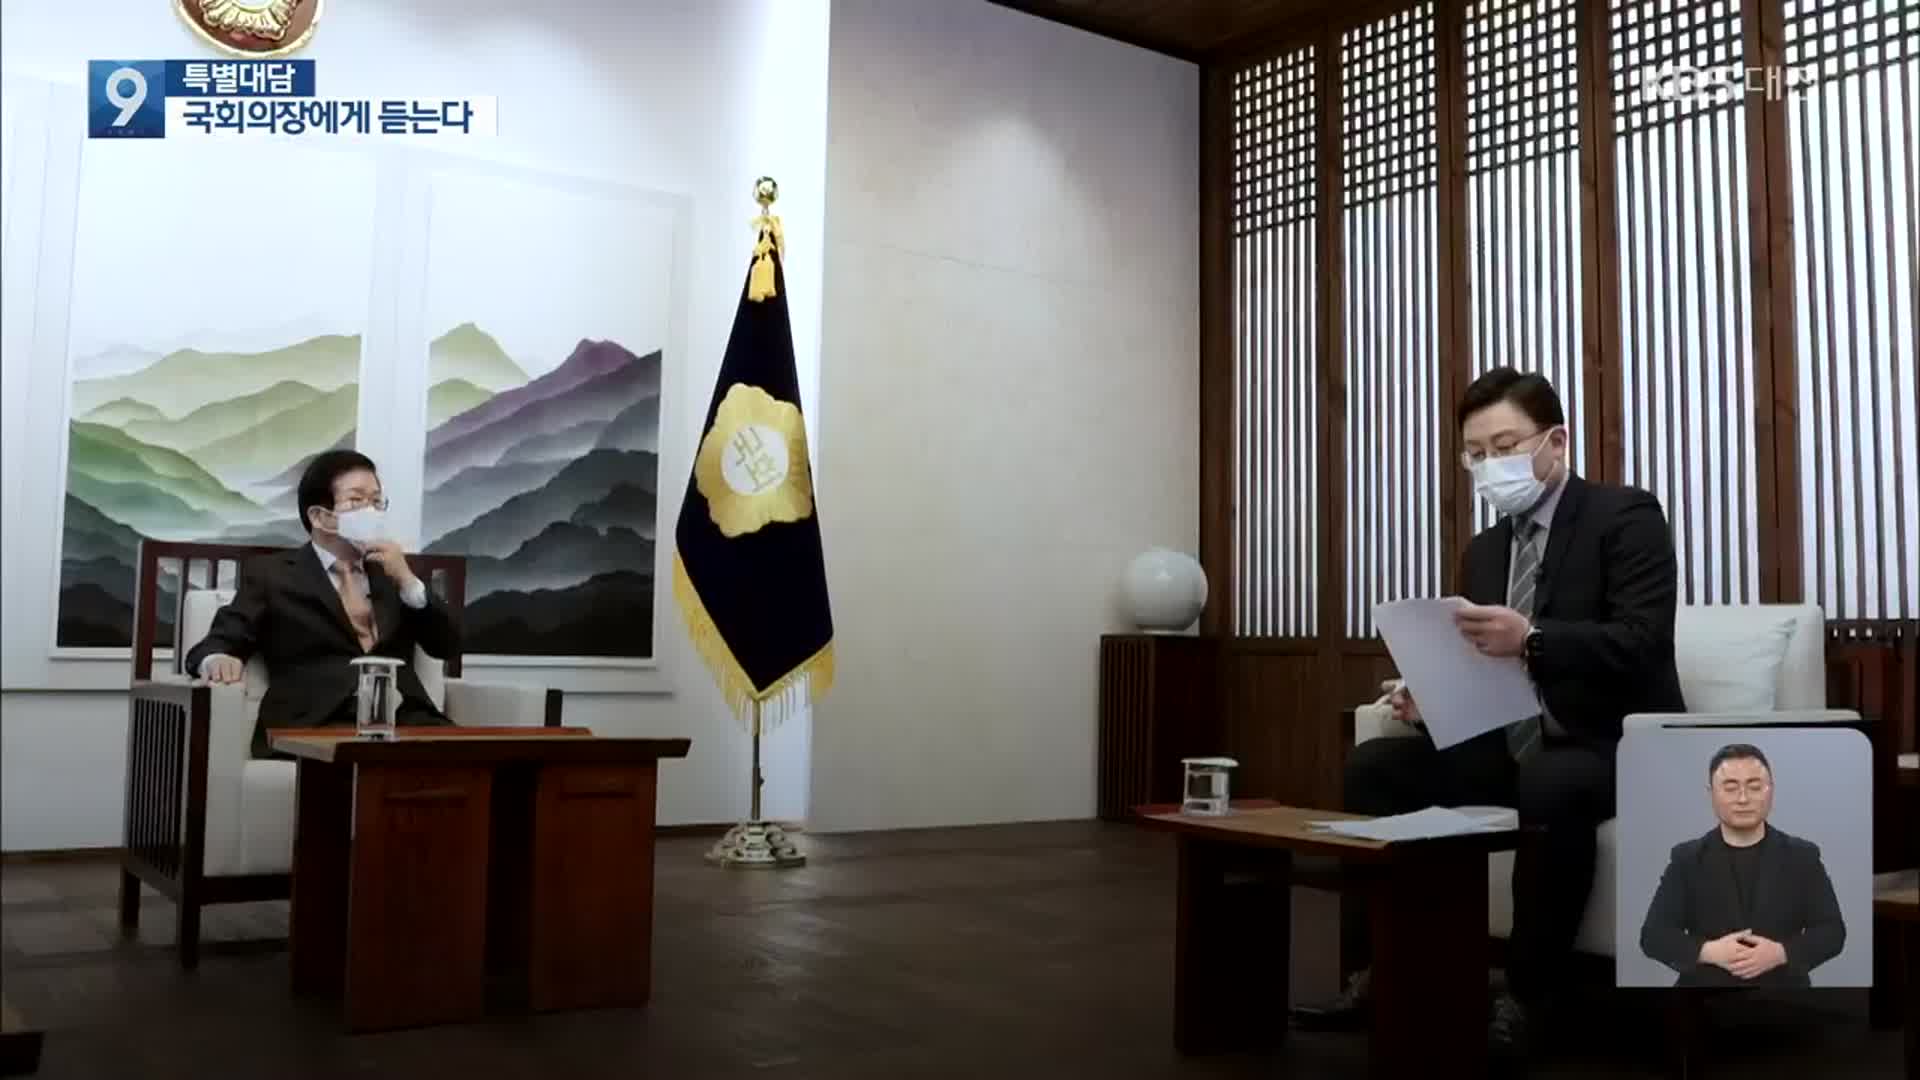 [특별대담] 박병석 국회의장에게 듣는다